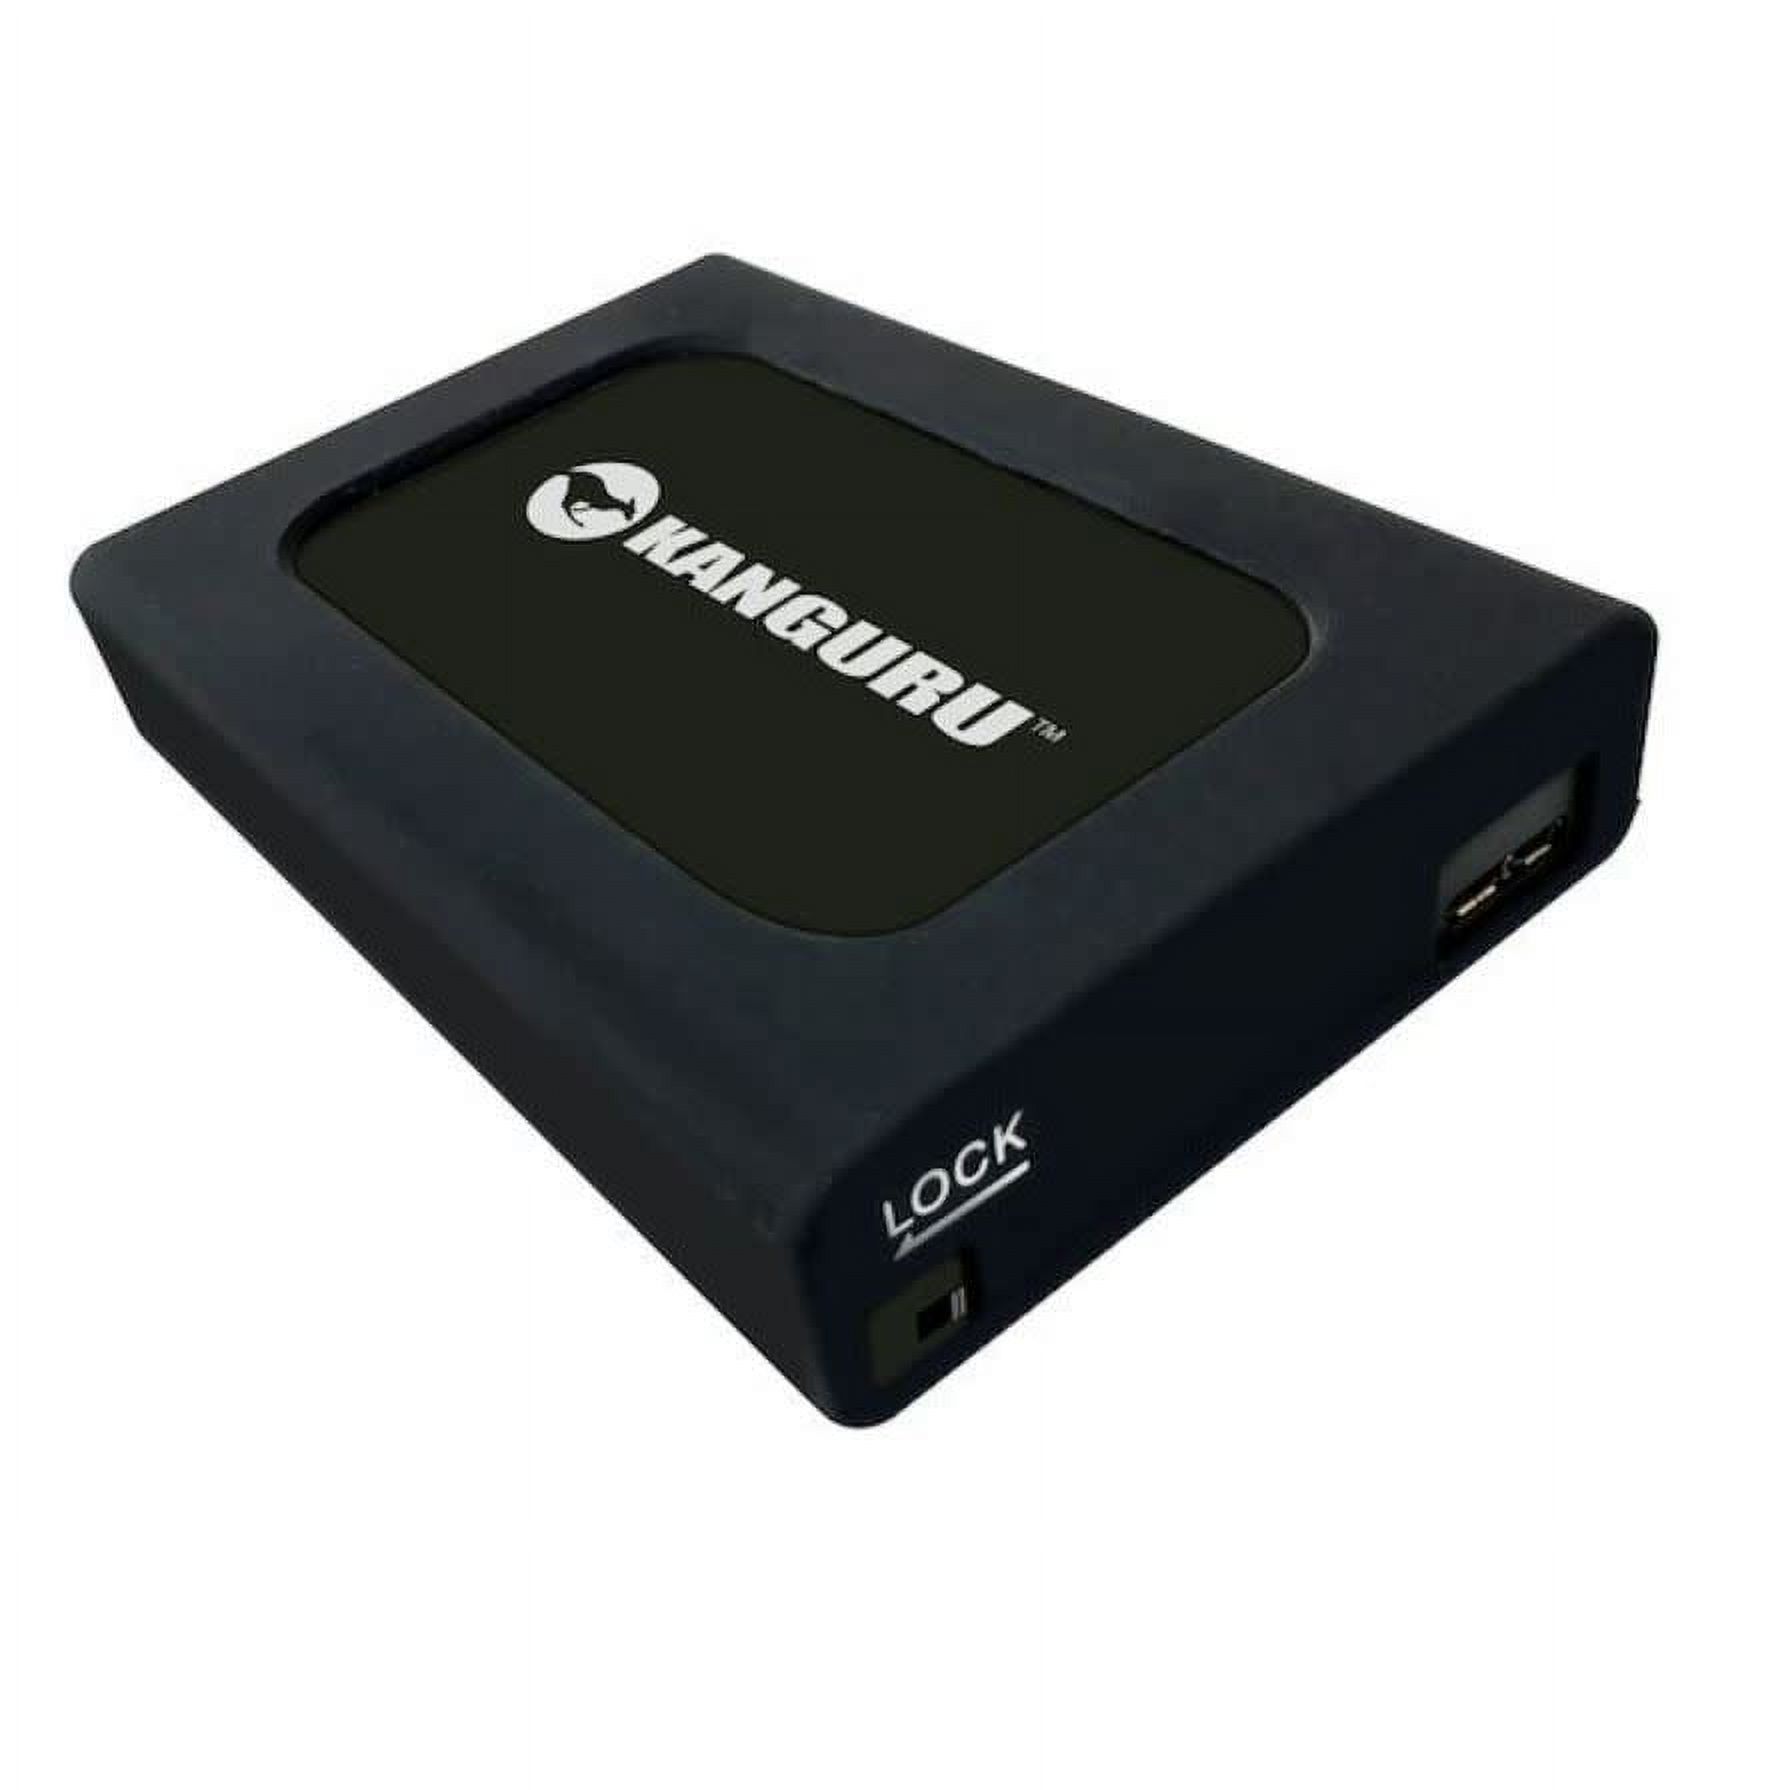 Kanguru 500GB UltraLock HDD USB 3.0 External Hard Drive - image 1 of 2